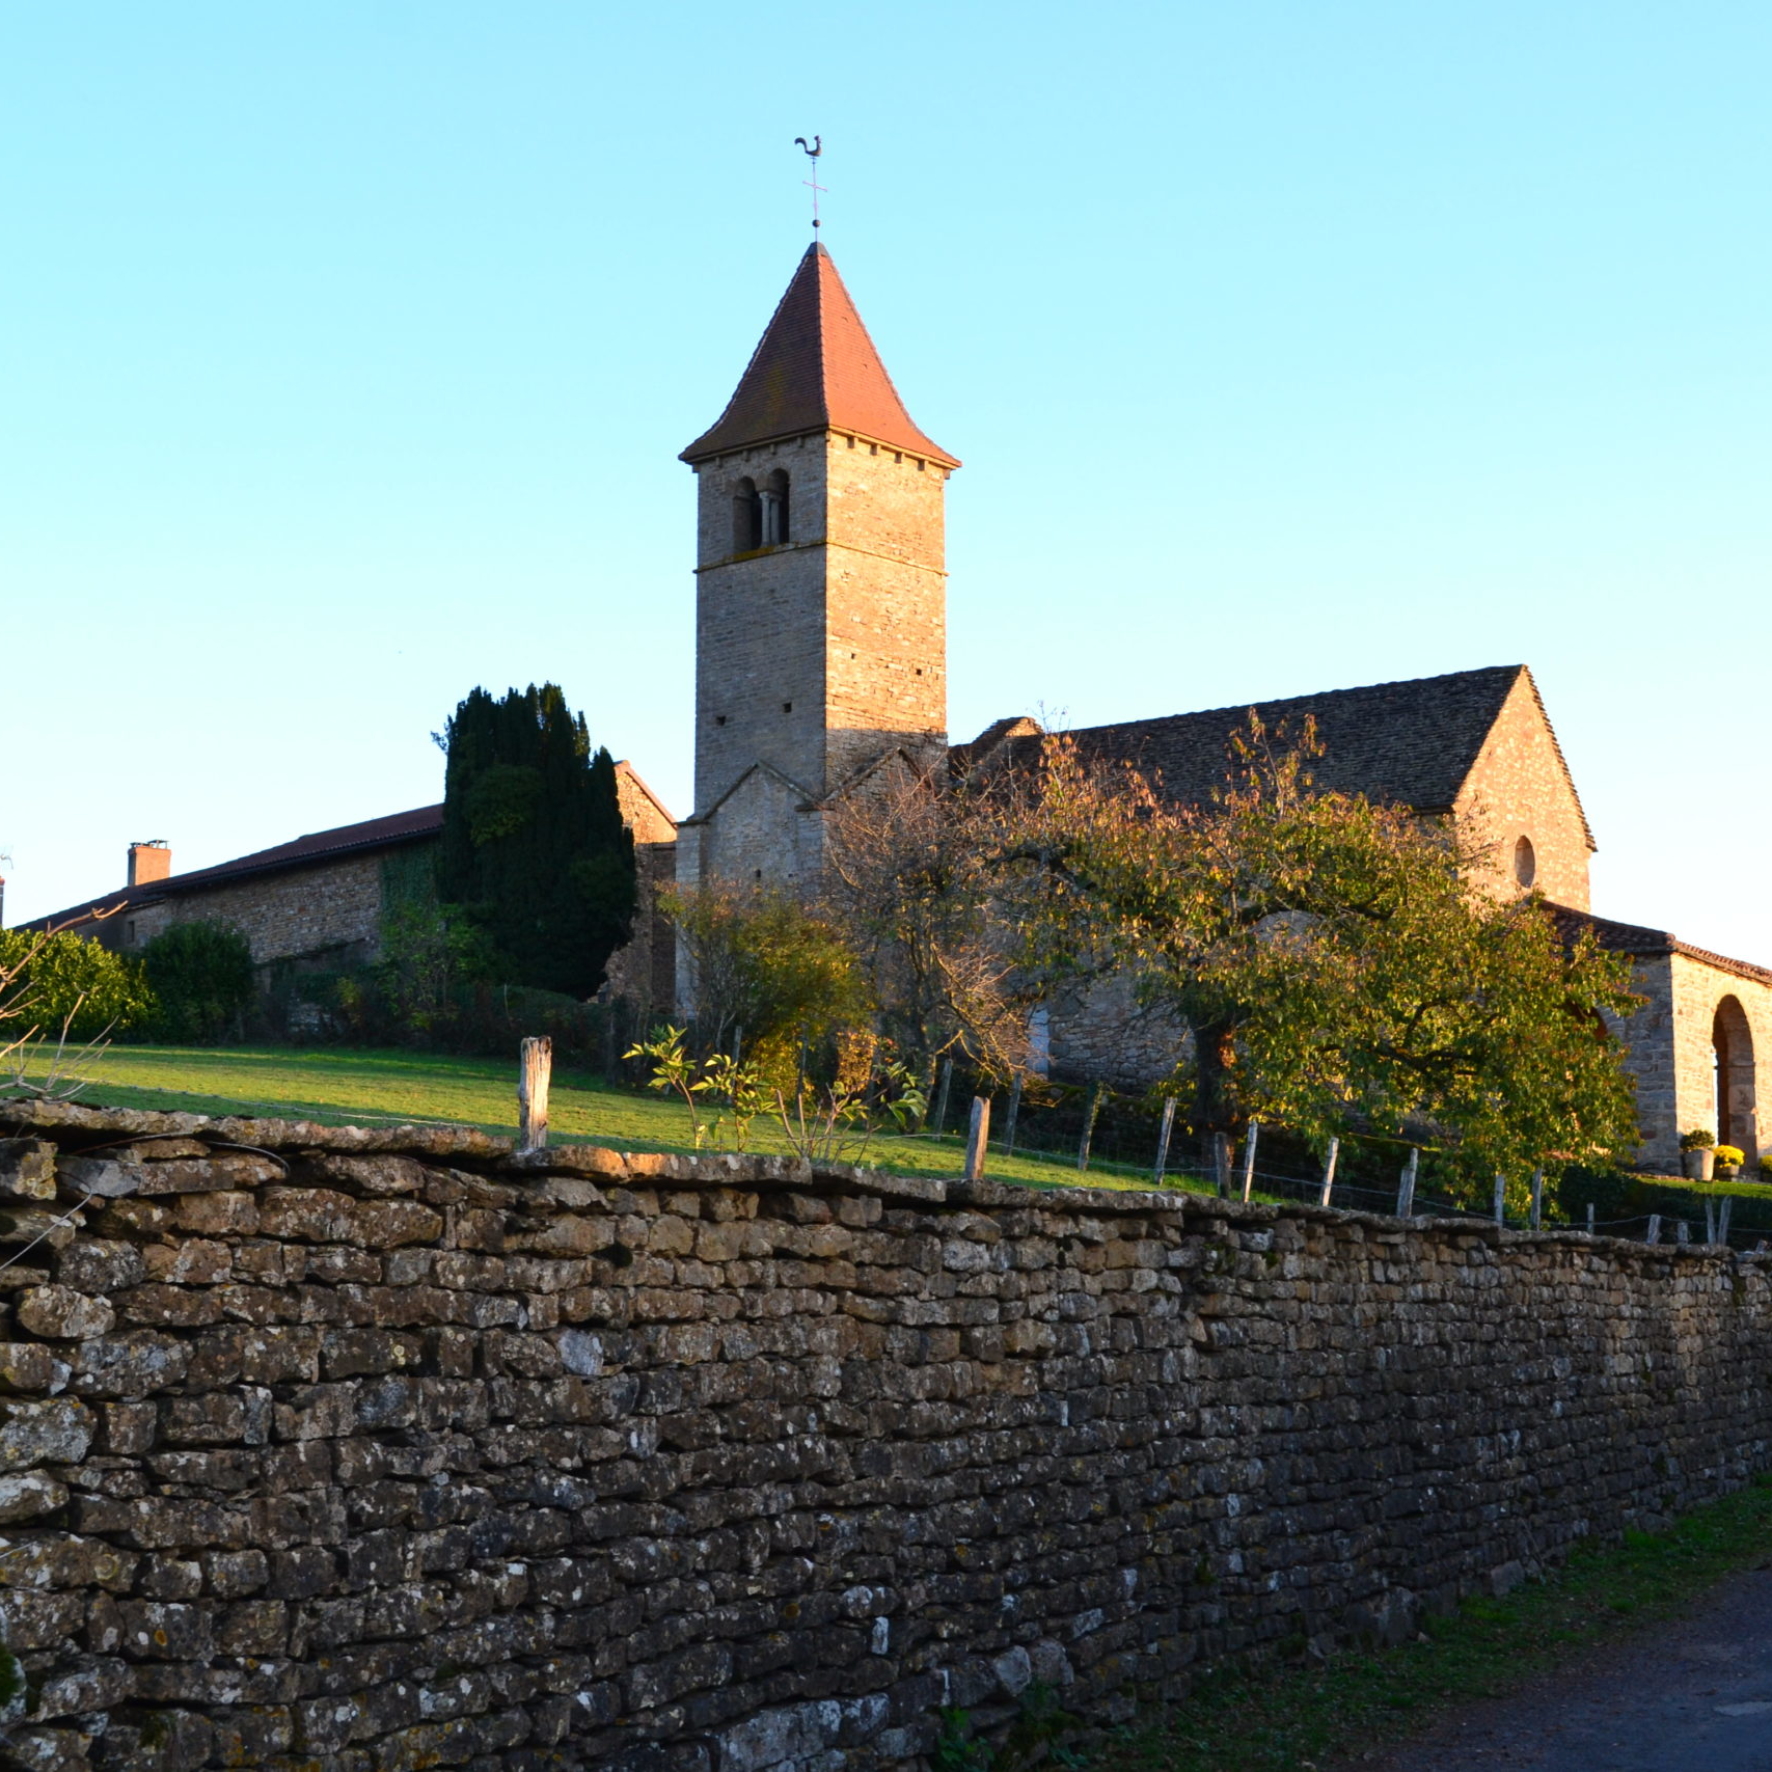 Chapelle de Vaux